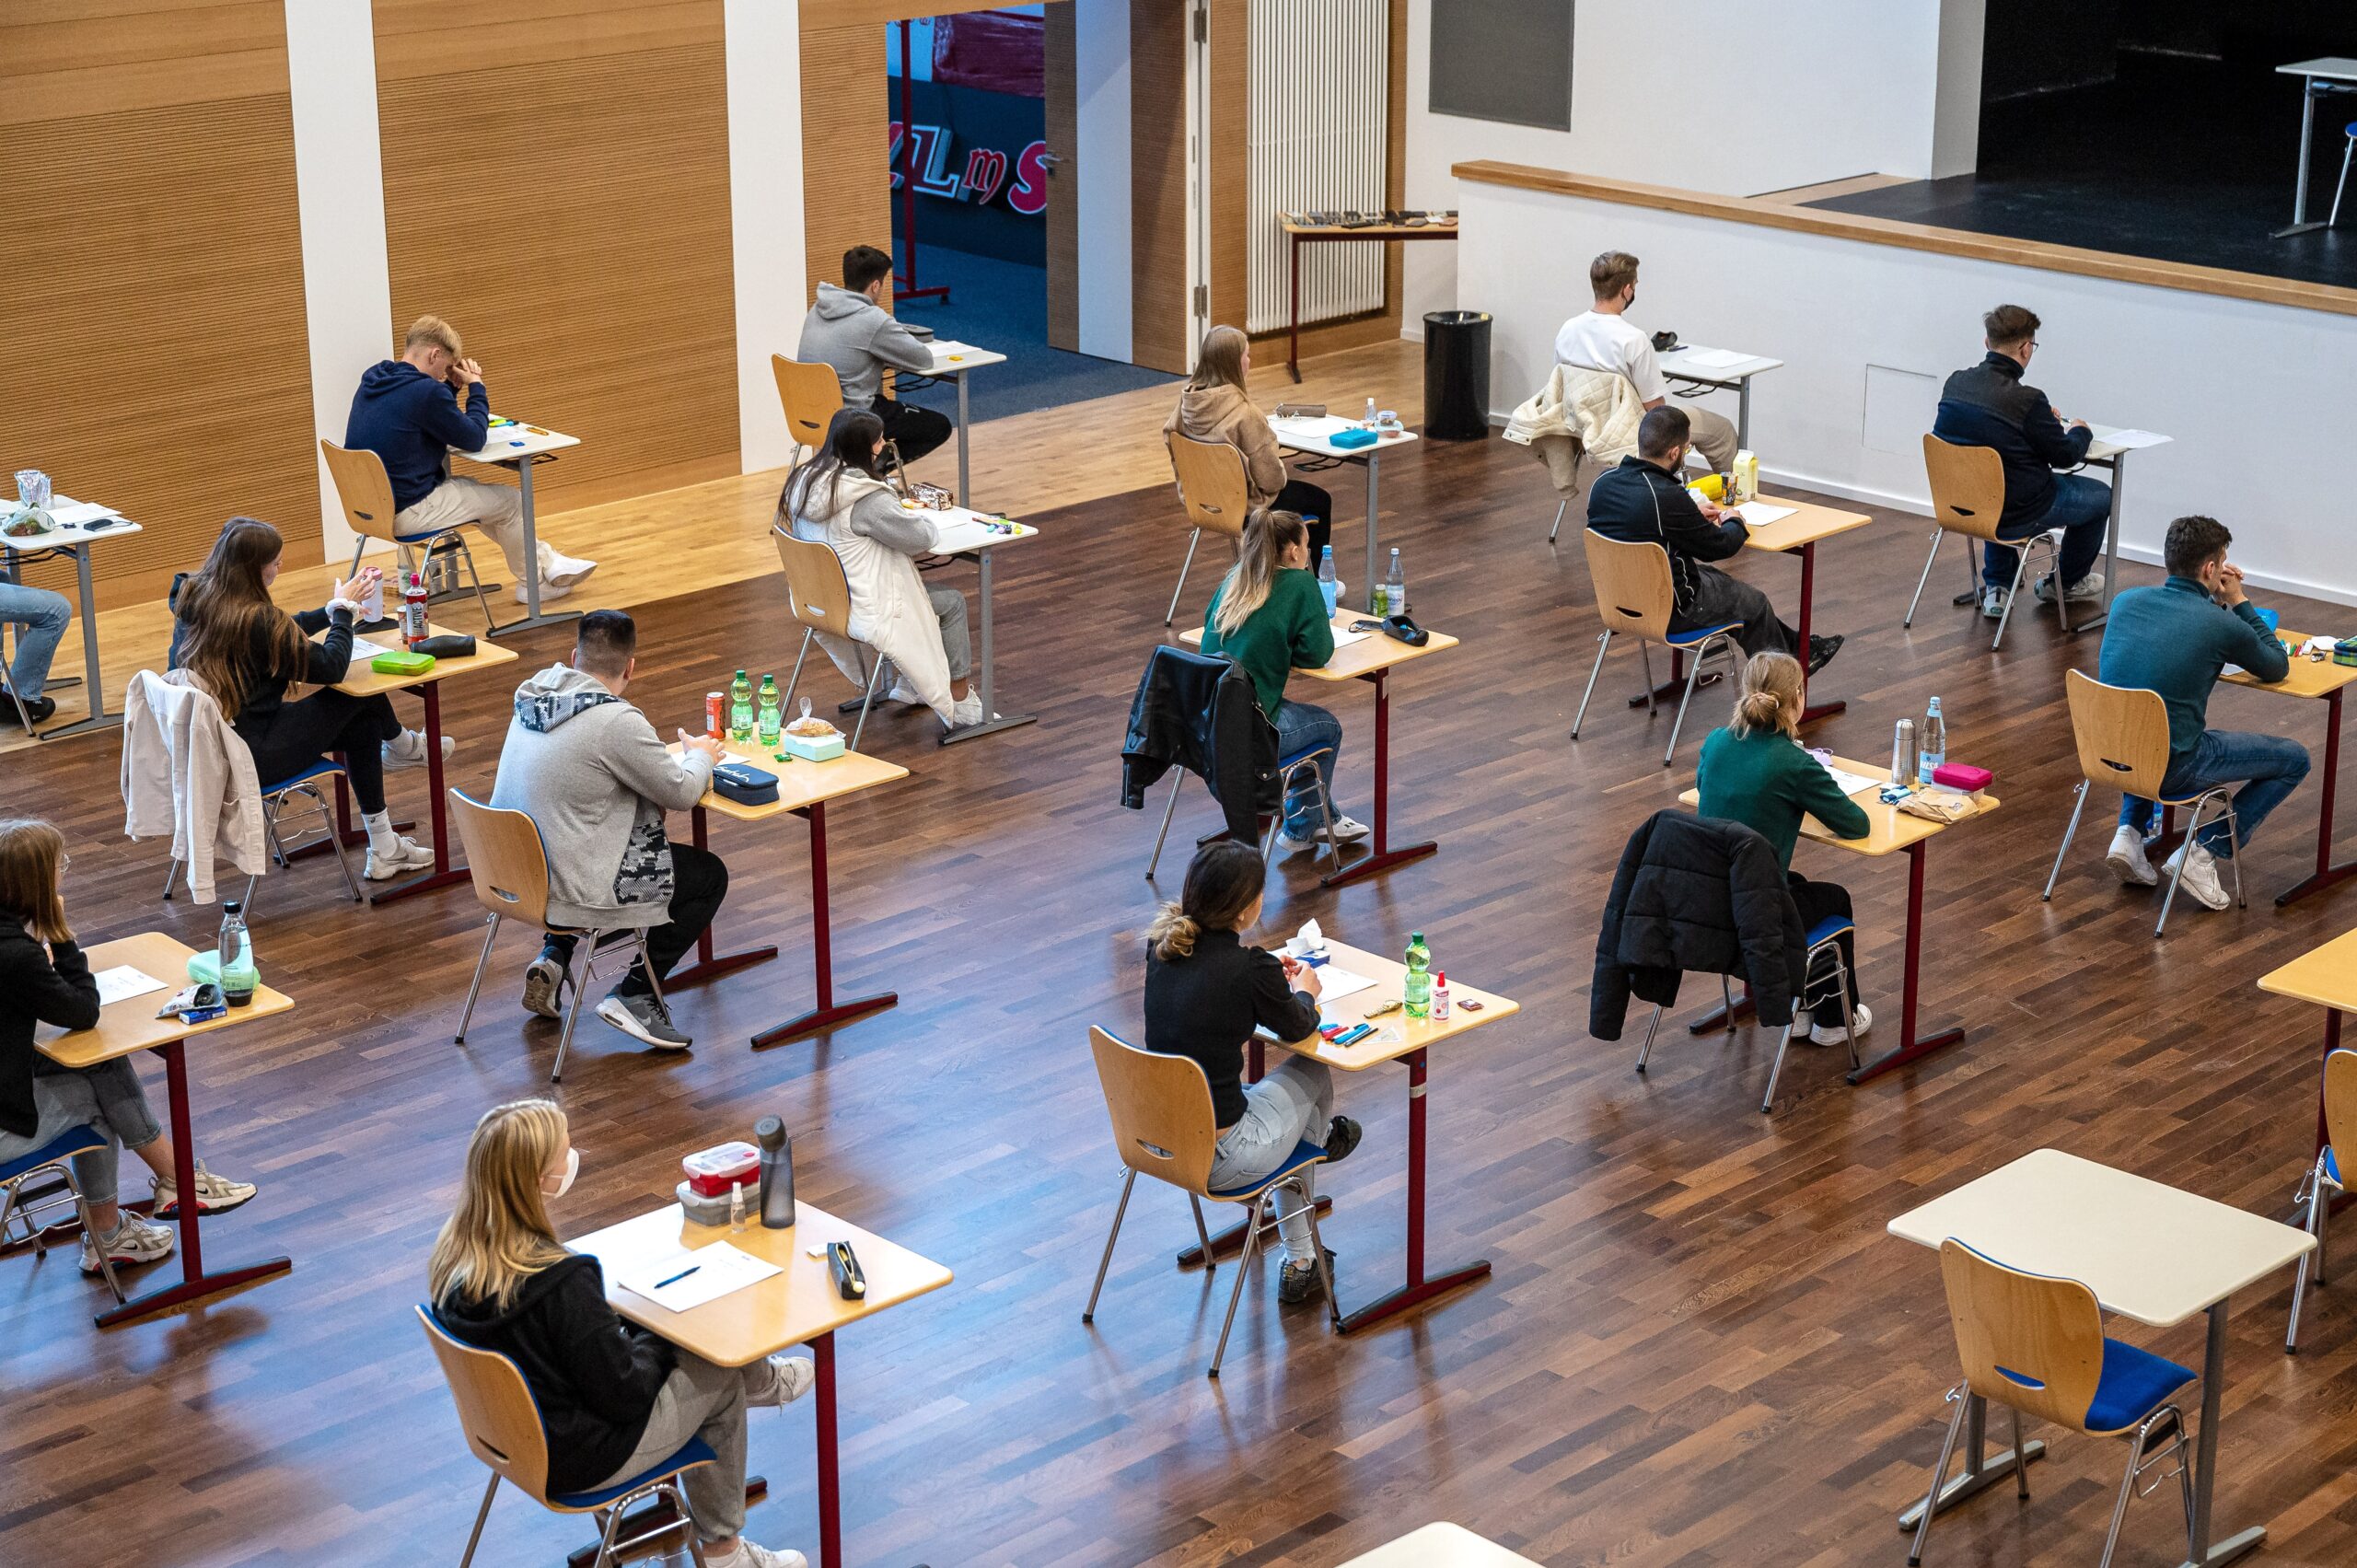 Am Mittwoch beginnen die schriftlichen Abiturprüfungen für rund 9400 Schüler:innen in Hamburg.